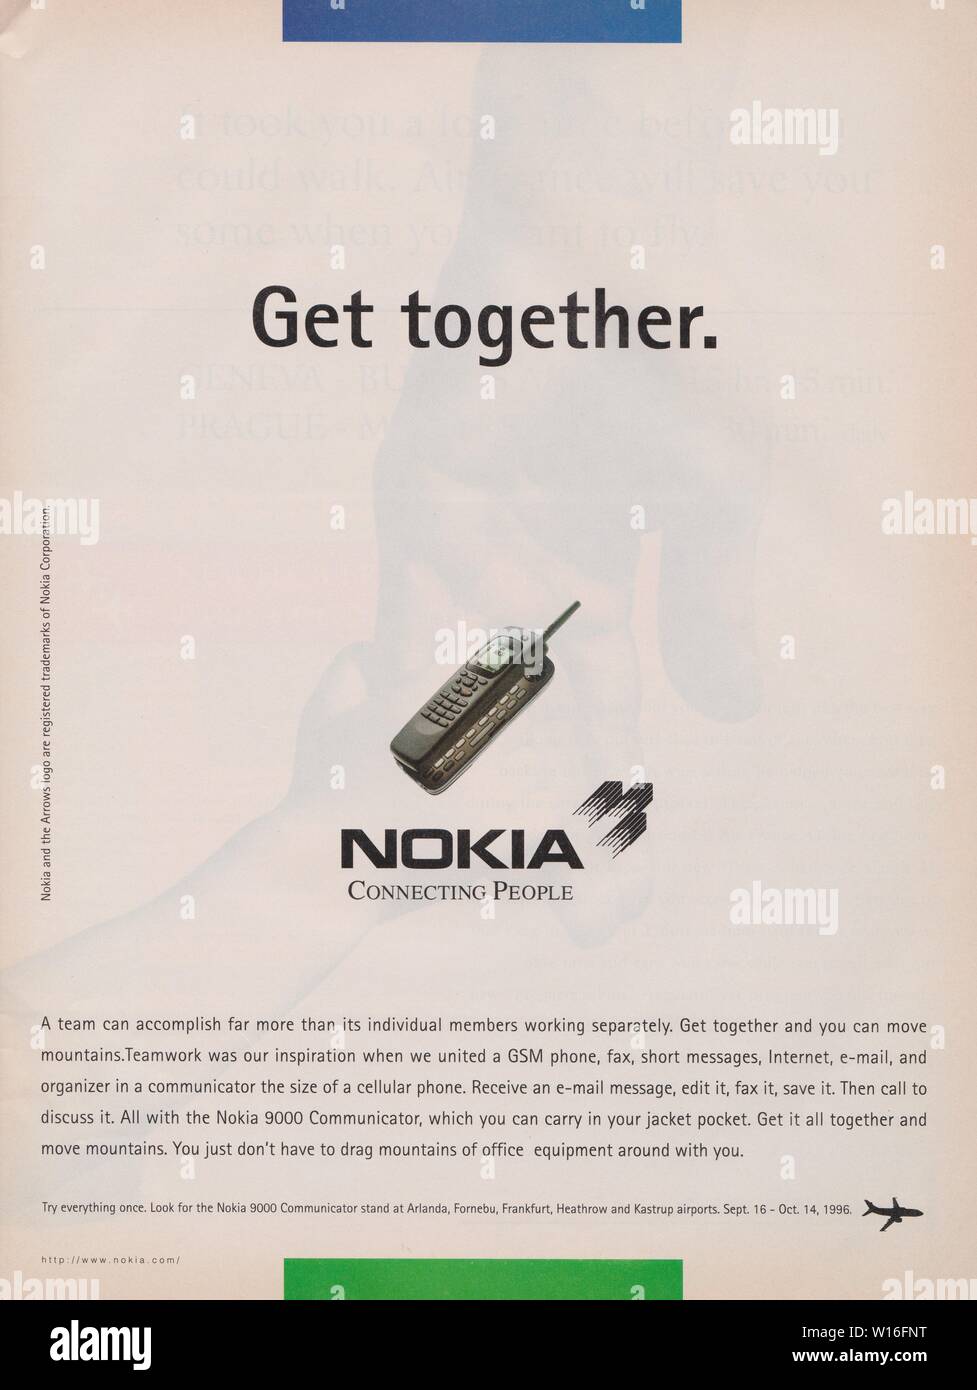 Cartel de publicidad Nokia 9000 Communicator Phone, revista 1996, Nokia Connecting People, eslogan, llegar juntos anuncio desde 1990 Foto de stock